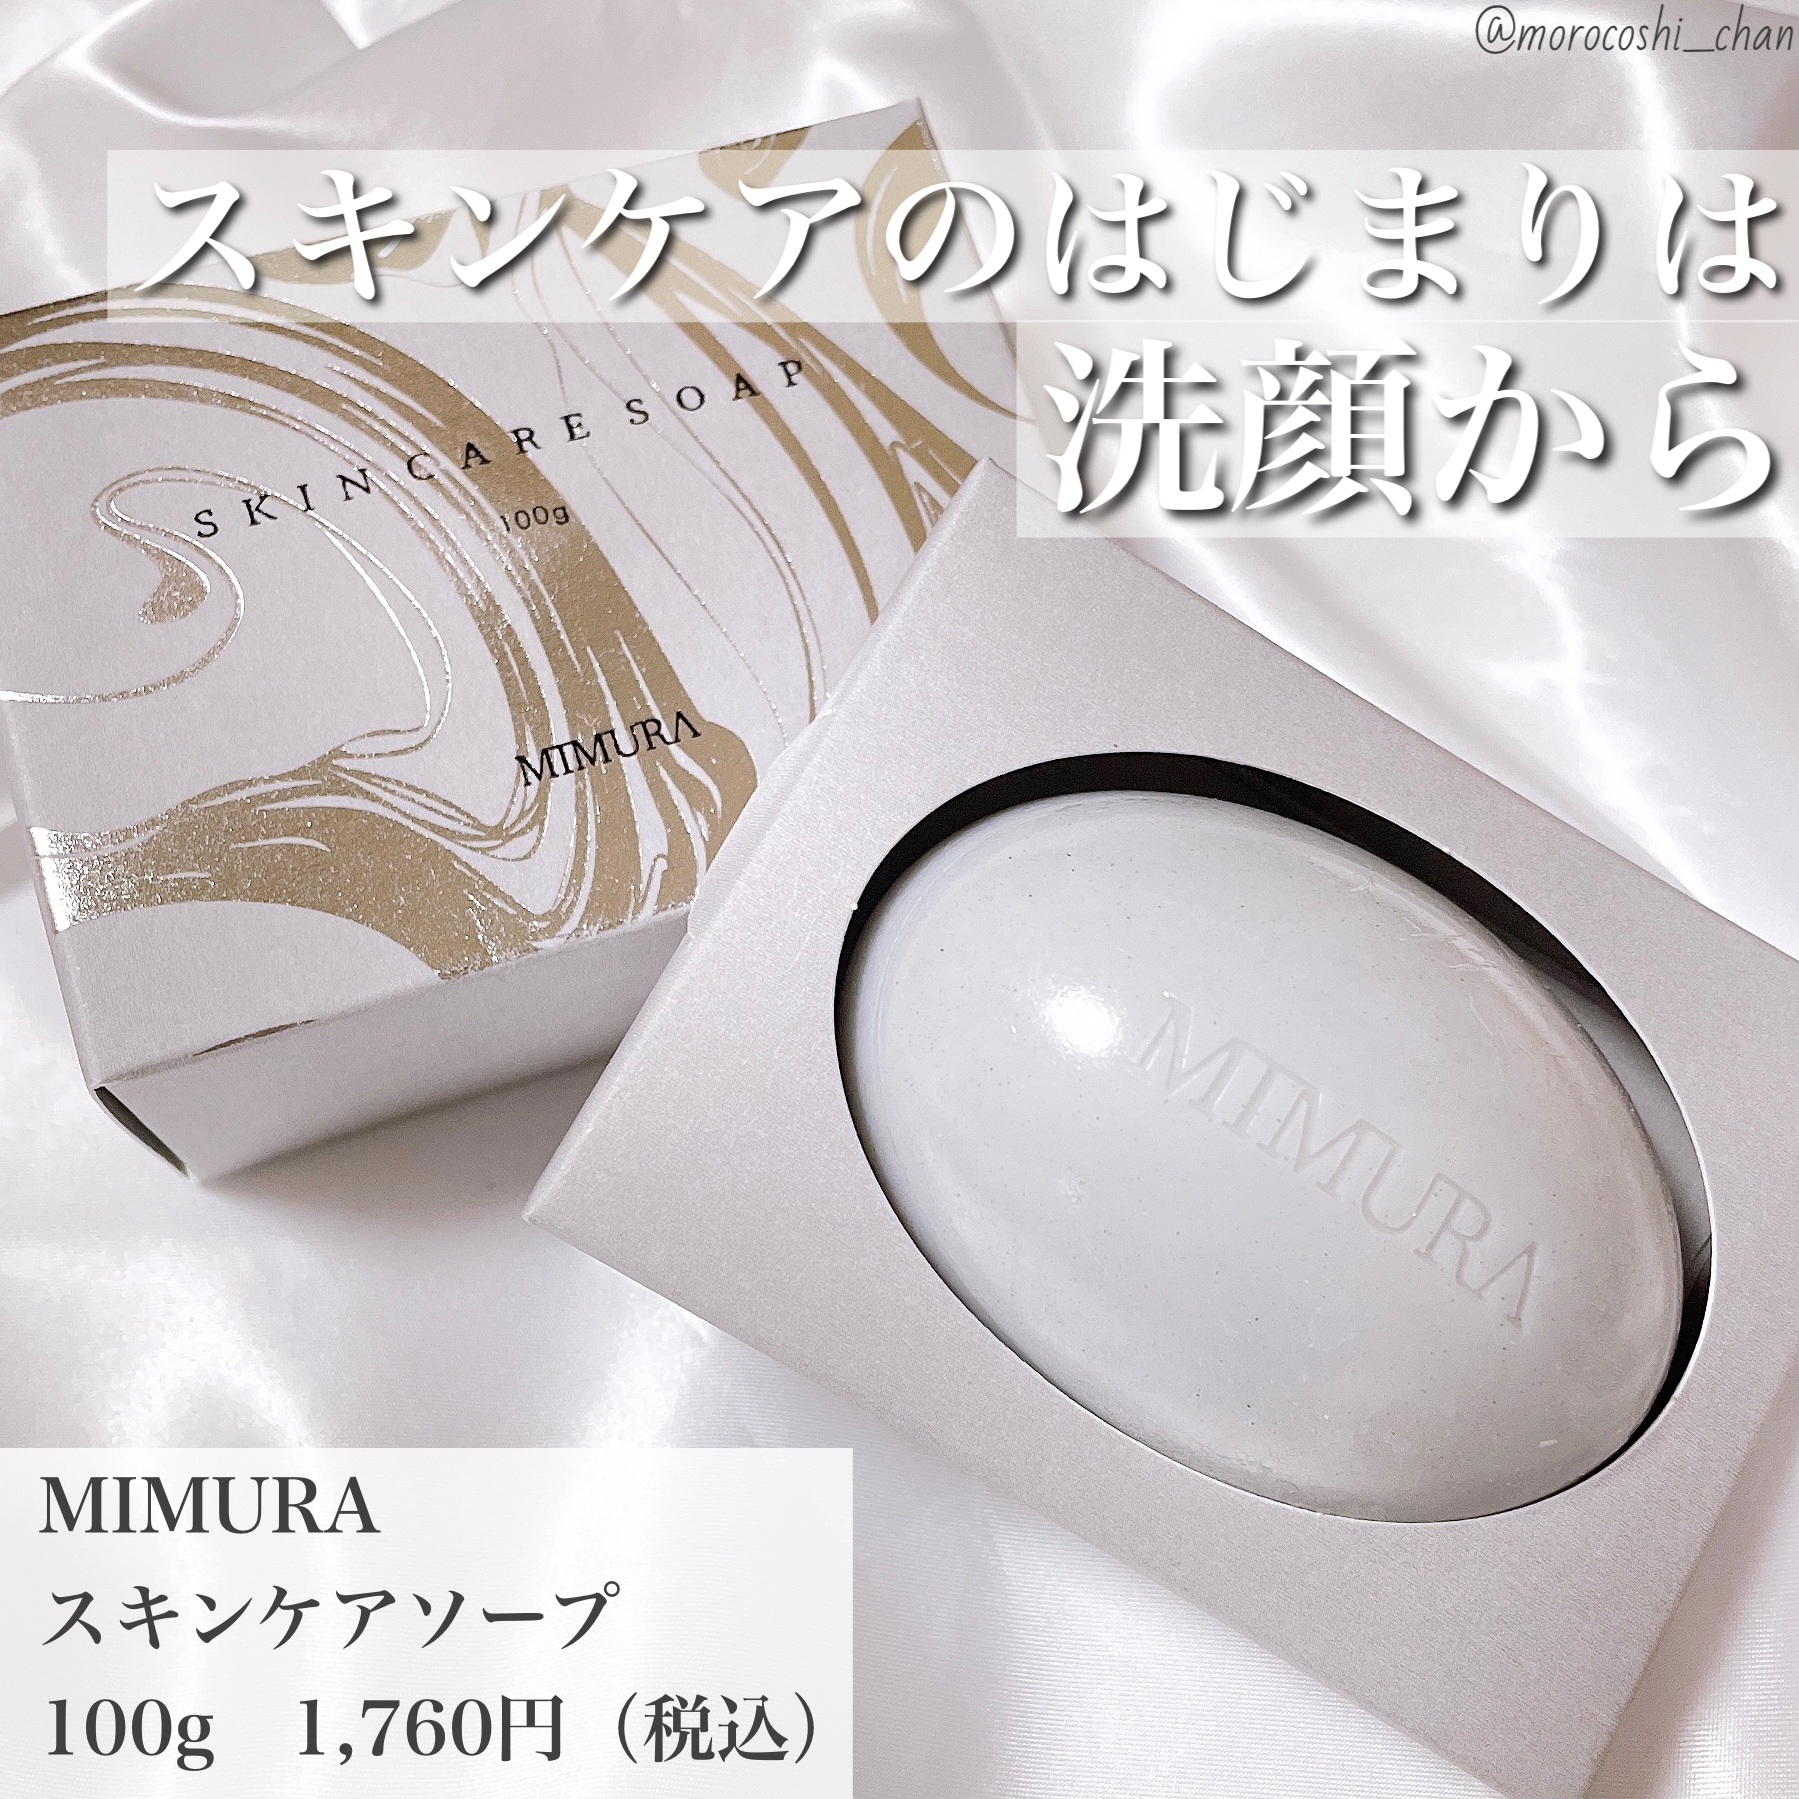 MIMURA(ミムラ) スキンケアソープの良い点・メリットに関するもろこしちゃん🌽さんの口コミ画像1